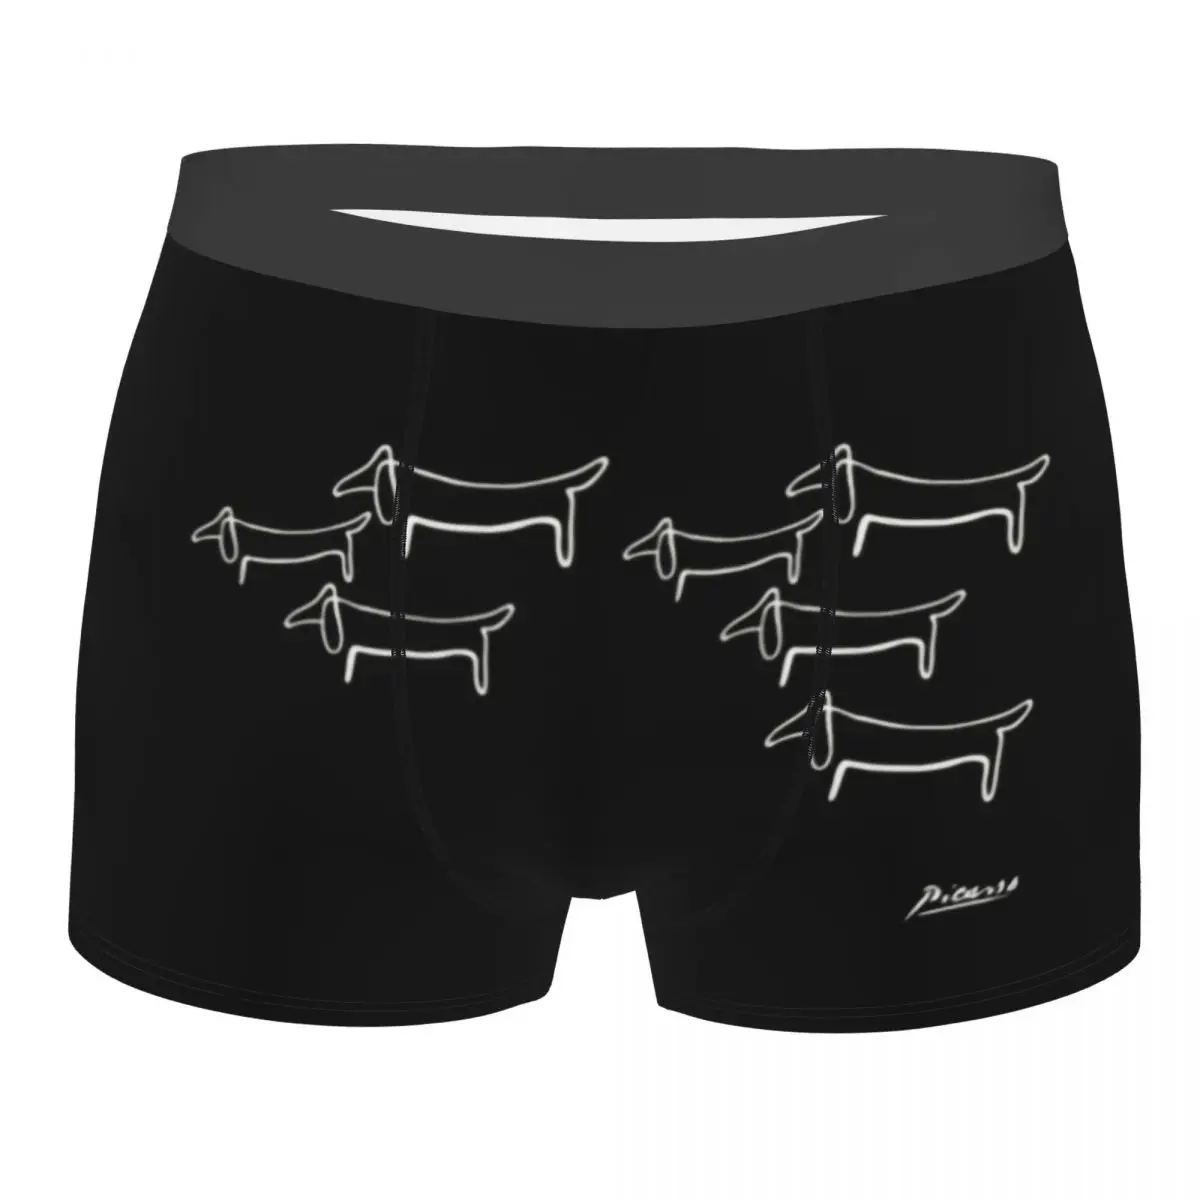 

Sexy Pablo Picasso Line Art Dachshund Boxers Shorts Panties Men's Underpants Stretch Wild Wiener Dog Briefs Underwear